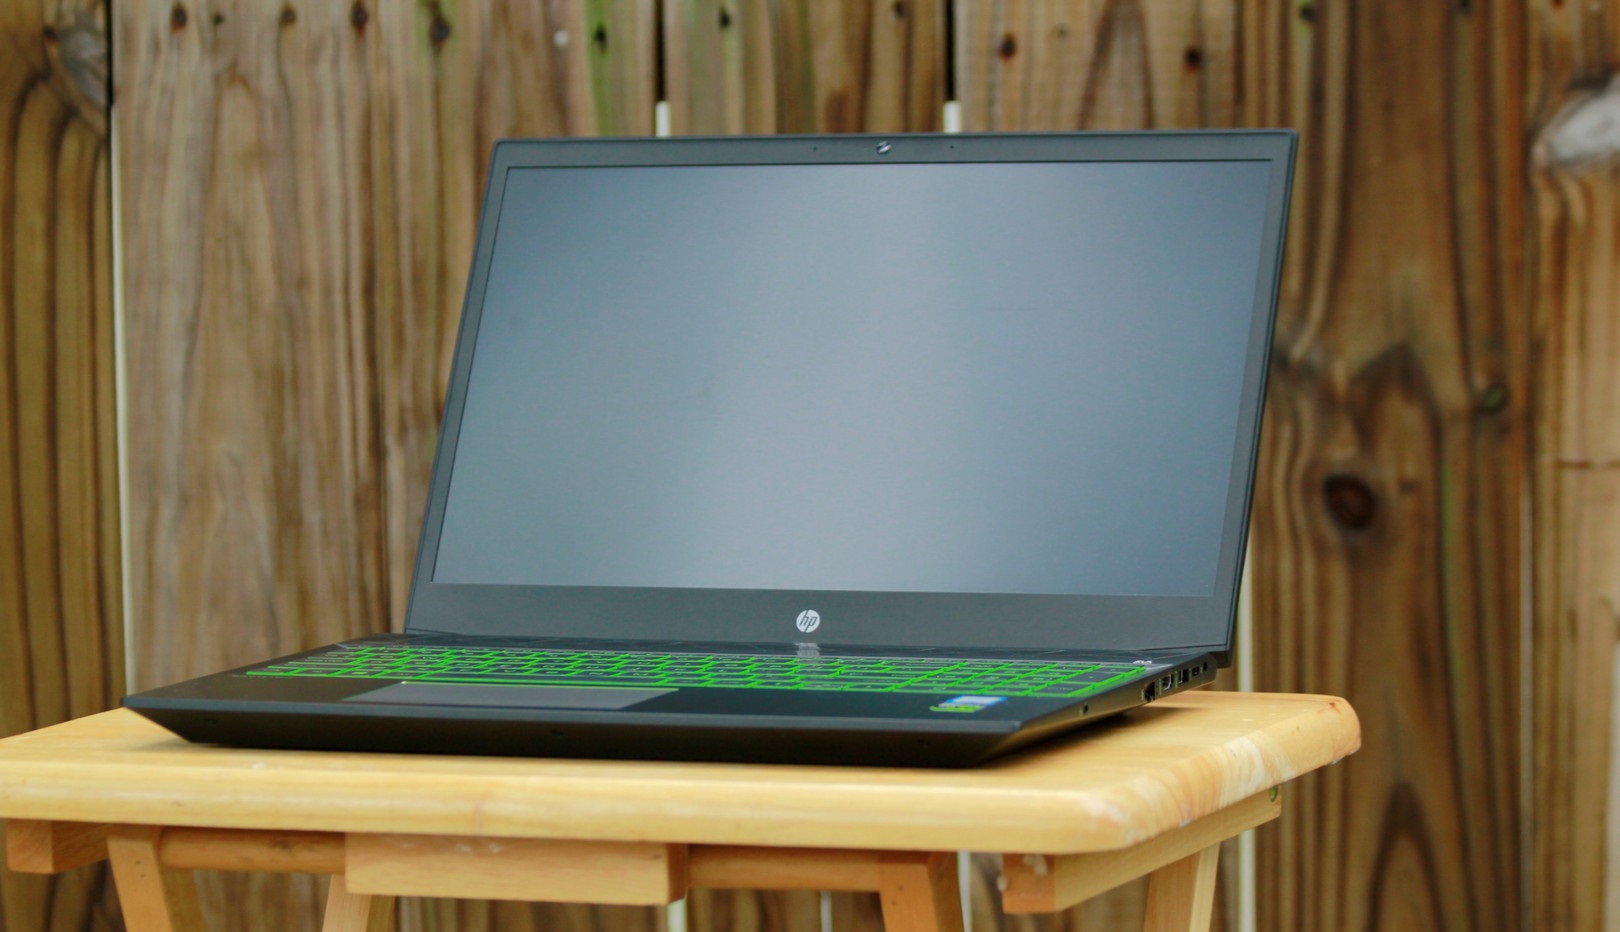 Đánh giá Laptop HP Pavilion Gaming 15 cx0000, chuyên trang tư vấn Laptop